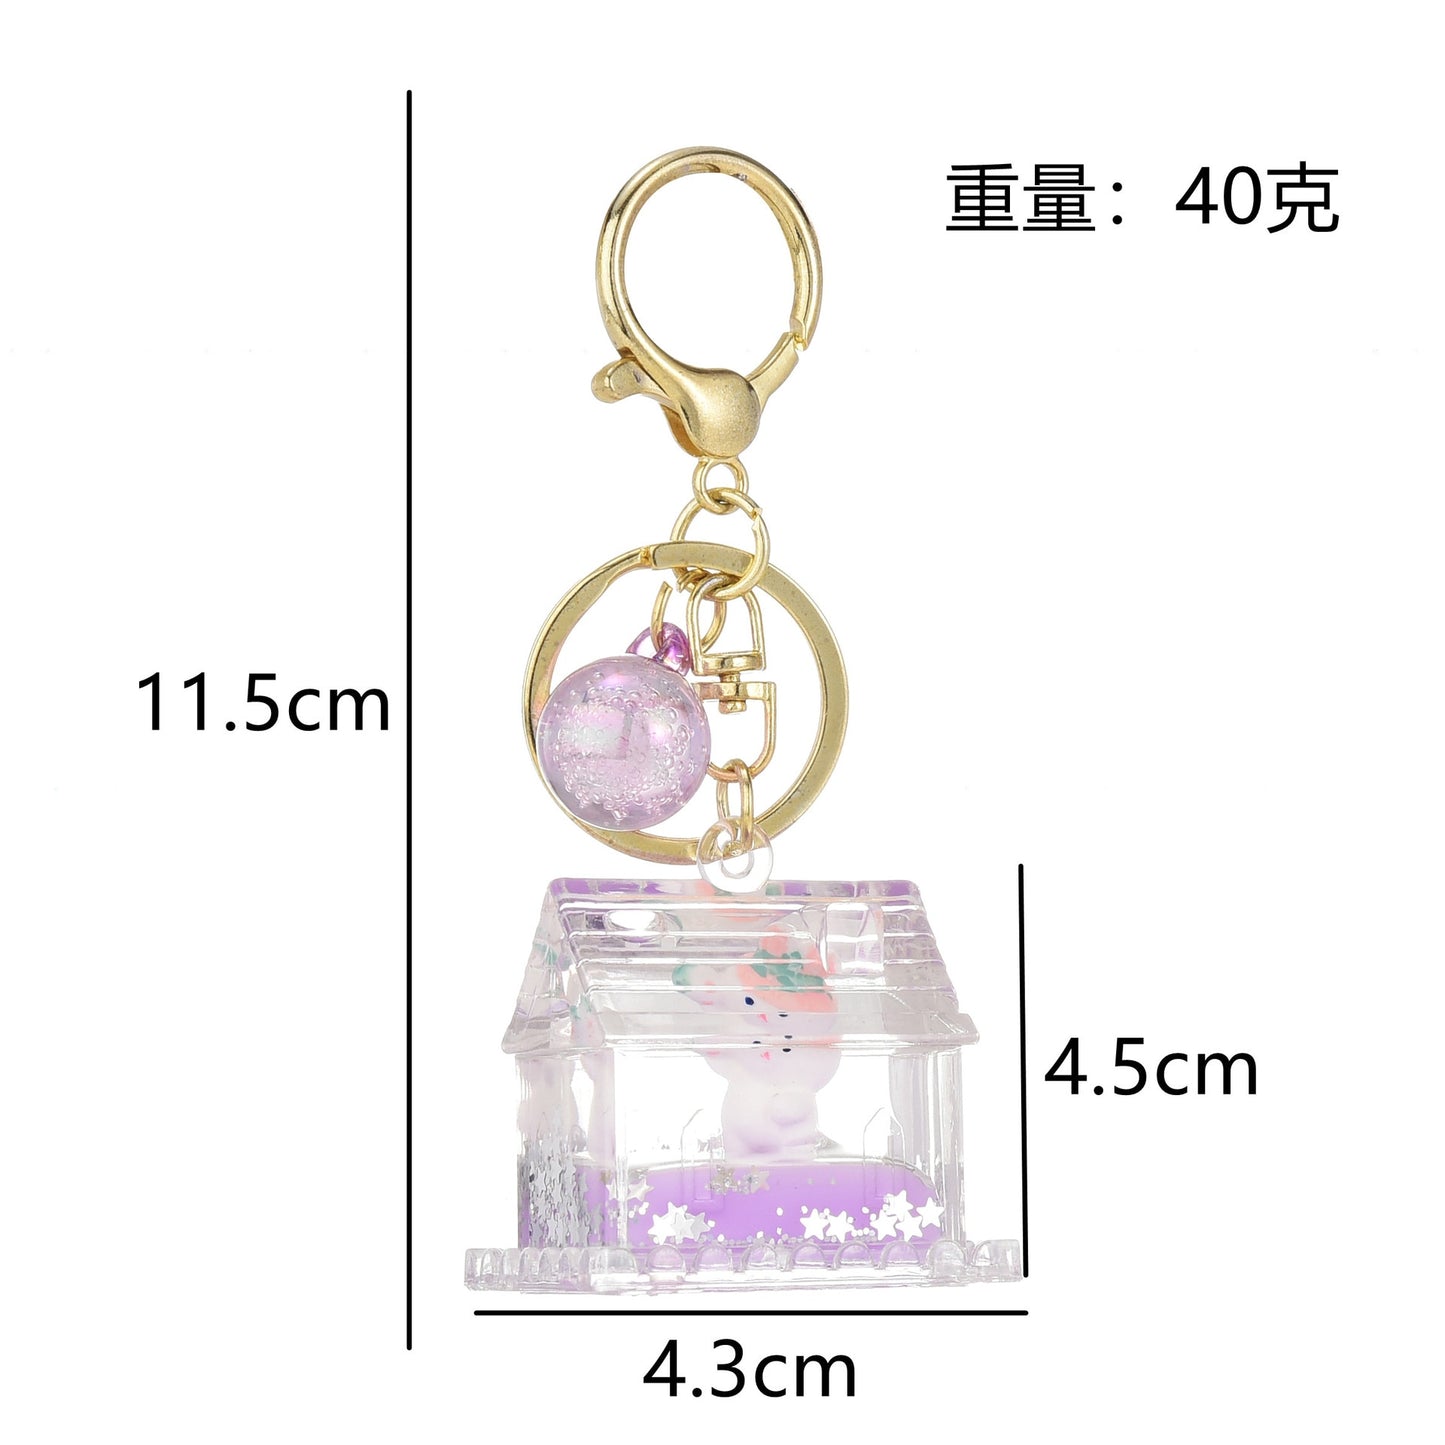 Kawaii Strawberry Bunny Keychain Dimensions 11.5cm by 4.5cm